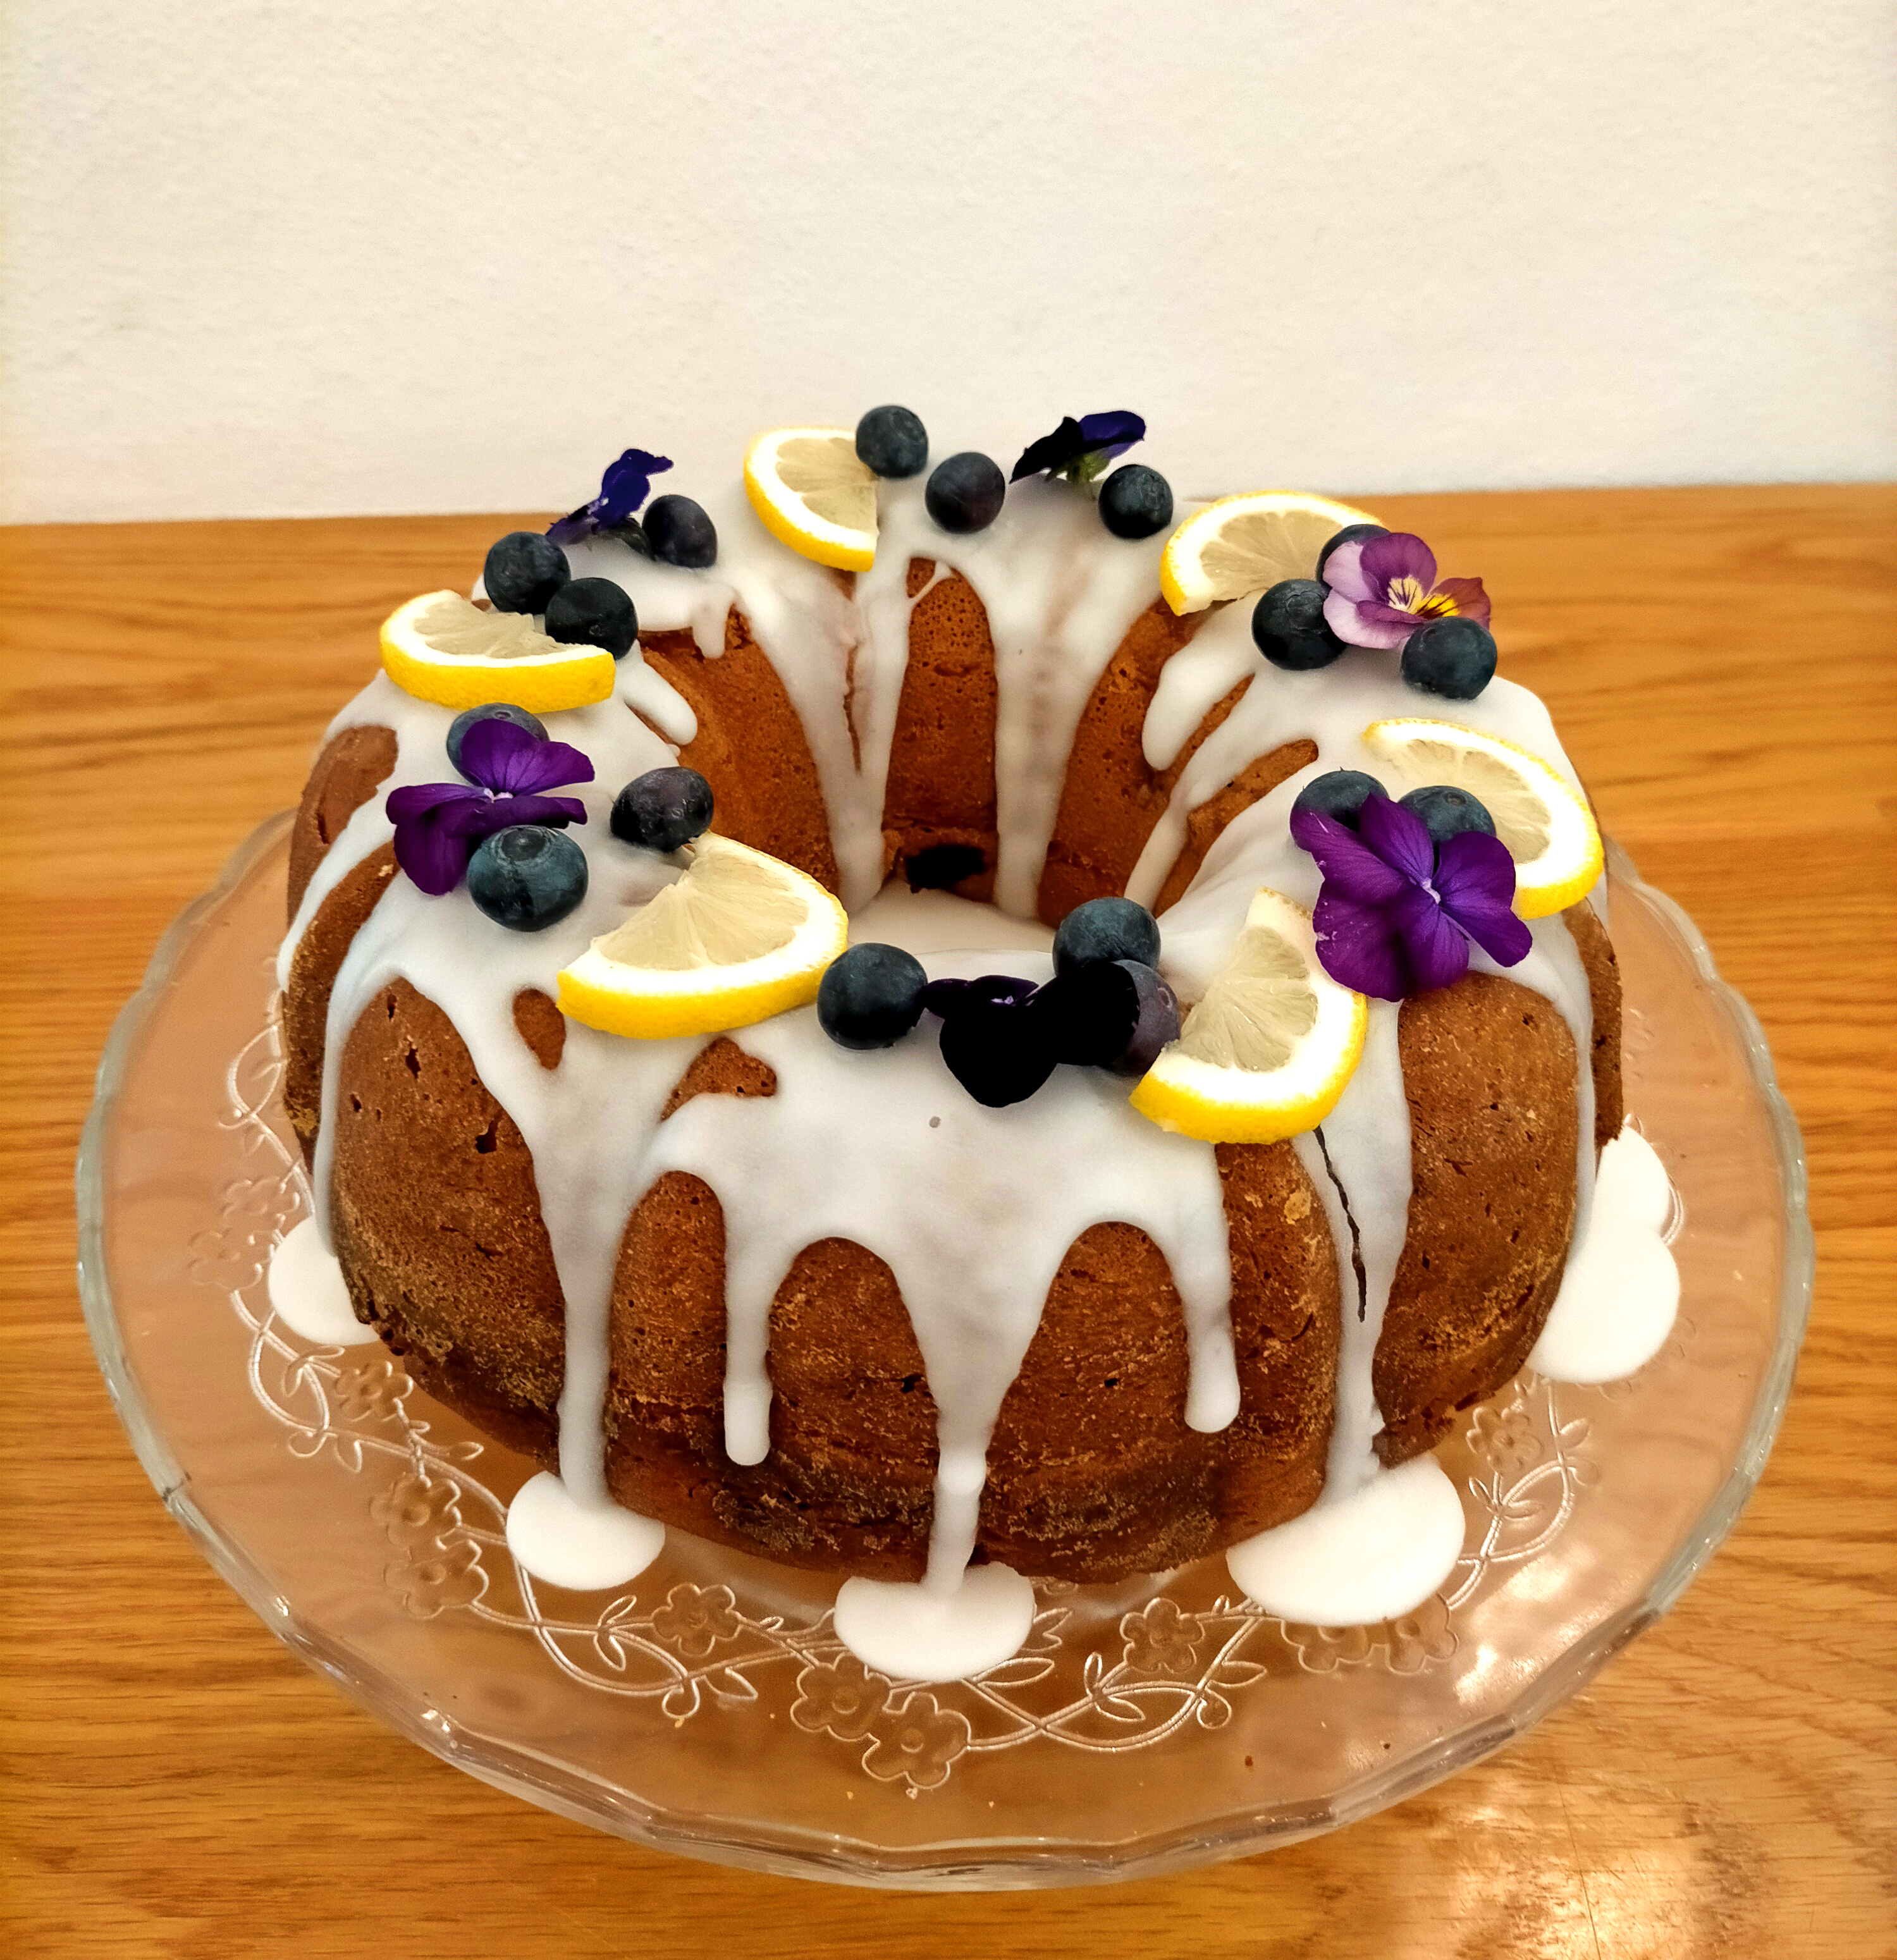 Lemon and blueberries cake